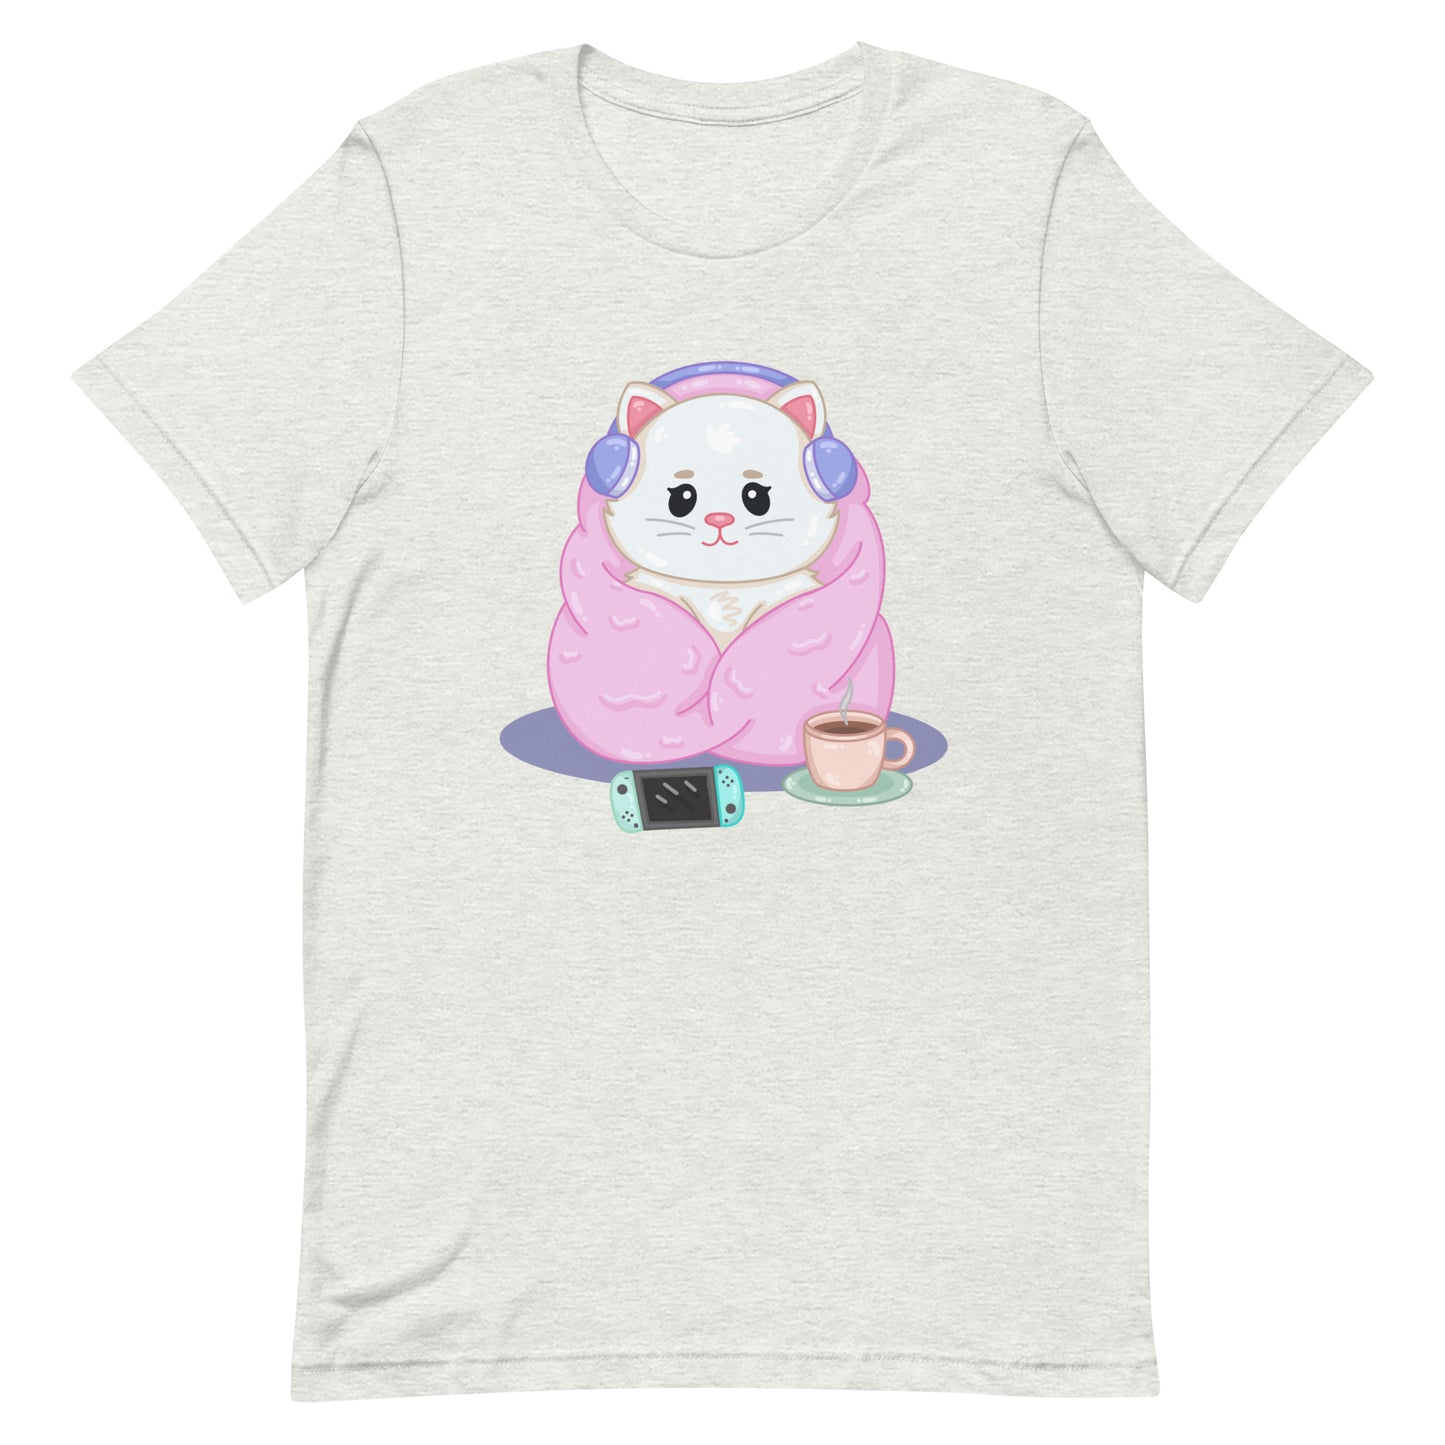 Cozy Kitty T-Shirt